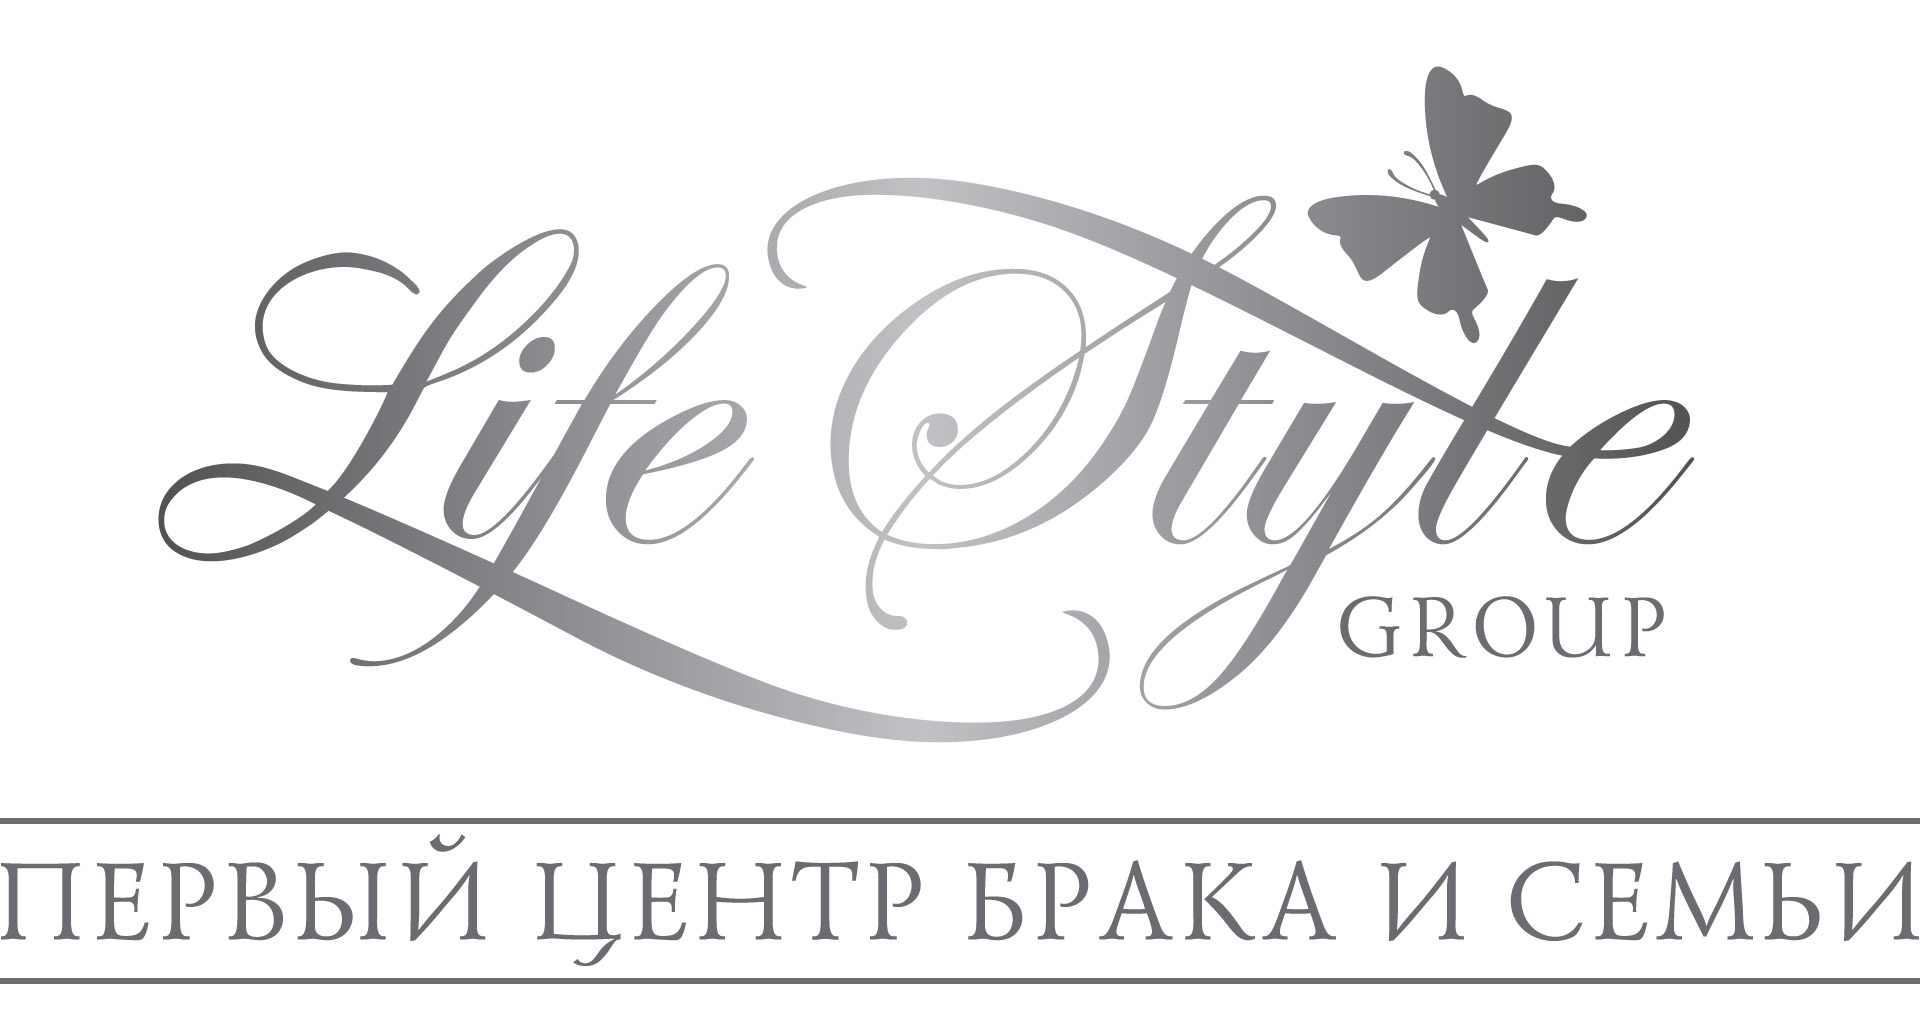 Ев групп сайт. Первый центр брака и семьи. Lifestylegroup. Life Style Group. ООО стайл групп Нижний Новгород.